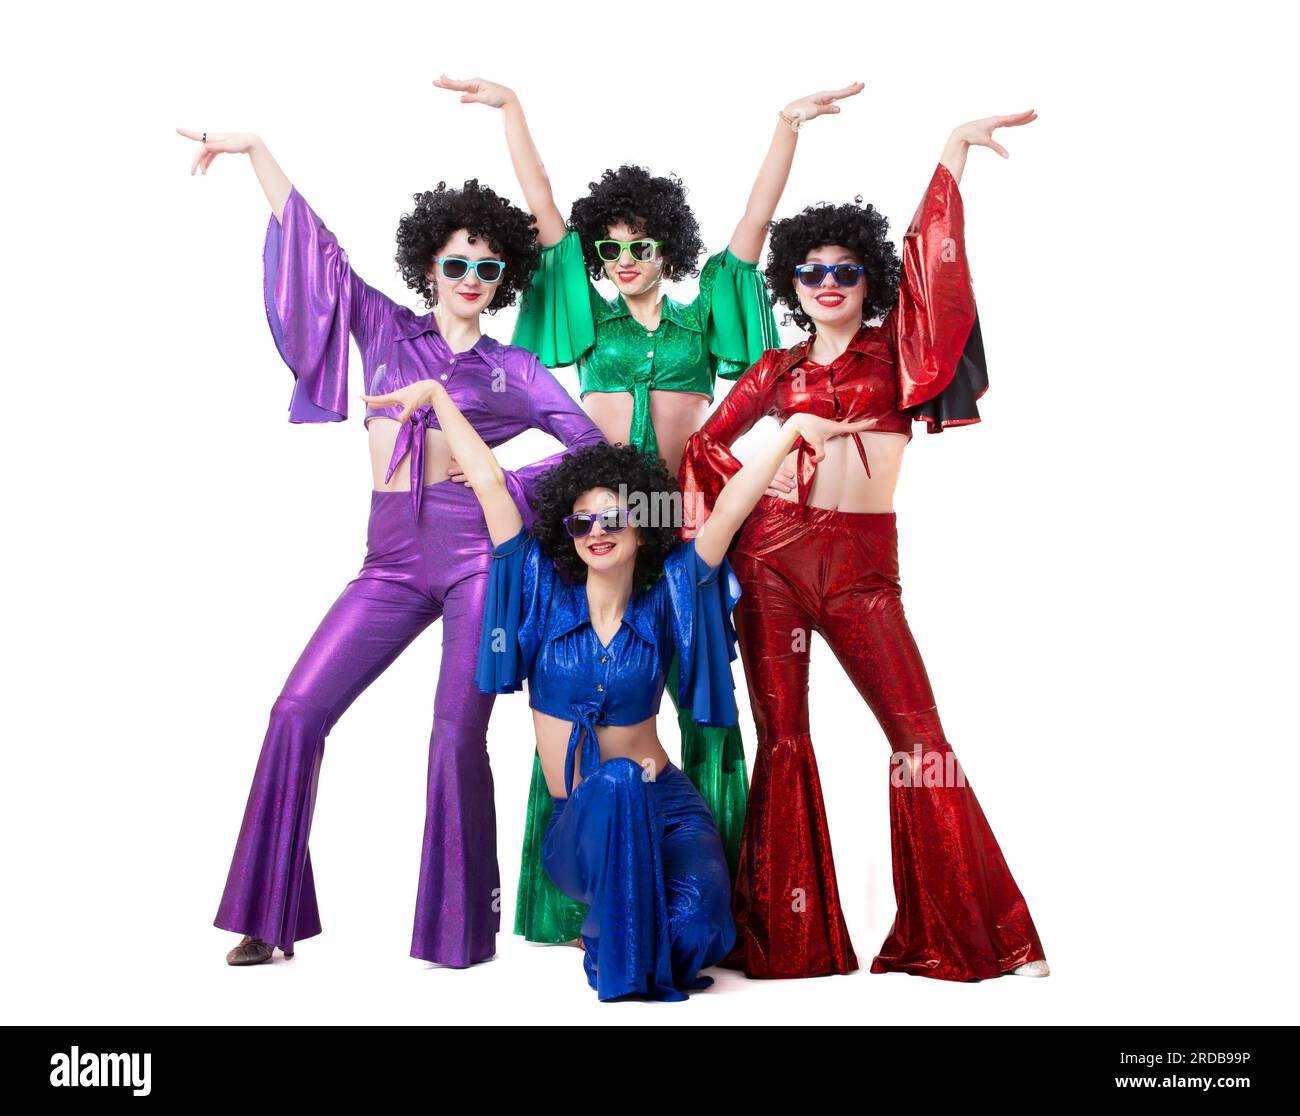 Un gruppo di ragazze con abiti svasati colorati e parrucche afro posano su uno sfondo bianco. Stile discoteca degli anni '80 o '70. Foto Stock